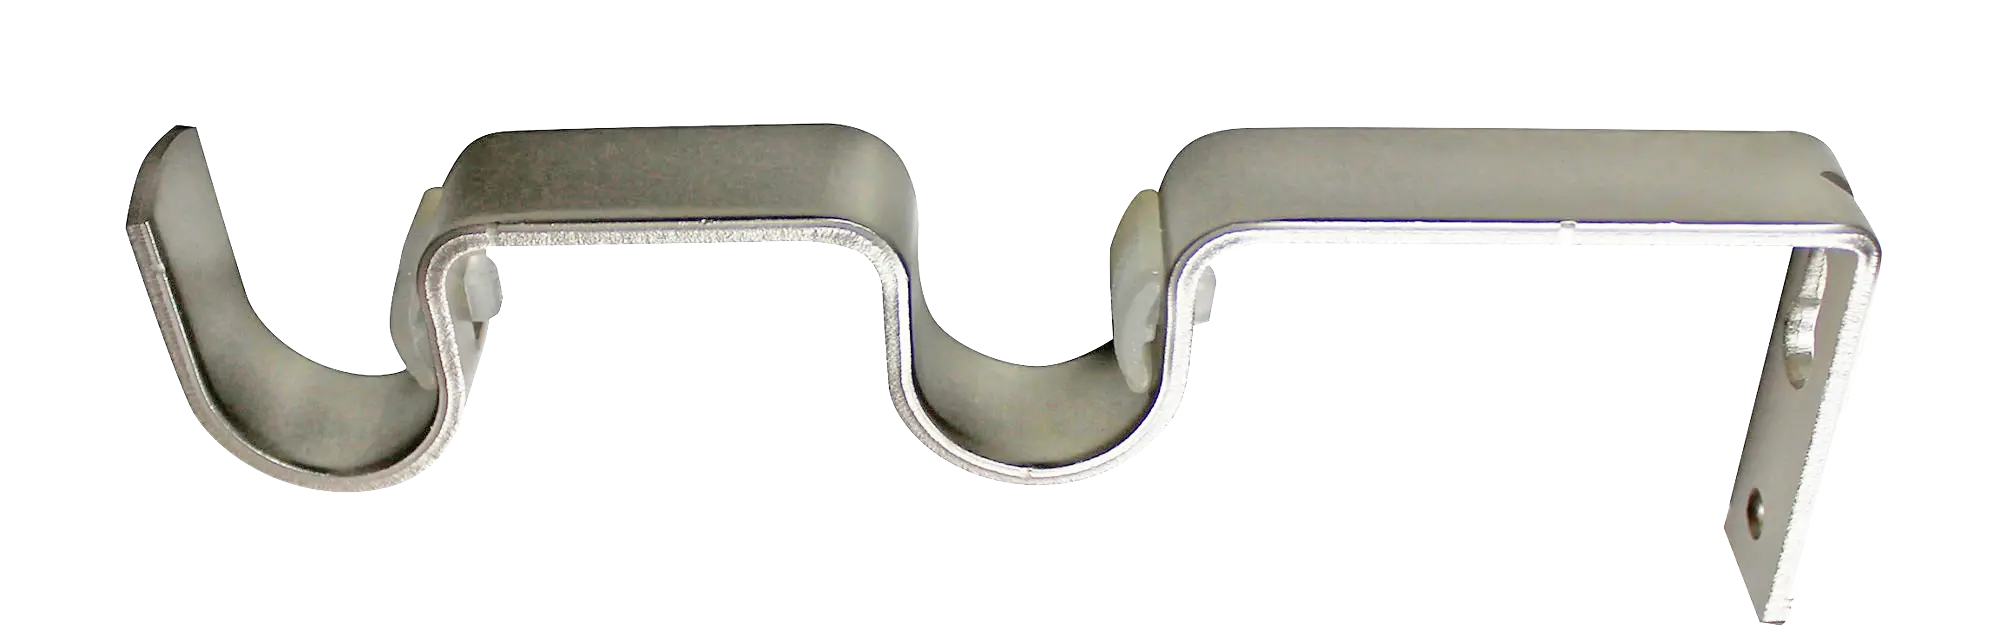 Держатель двухрядный простой Inspire, металл, цвет никель, 2 см